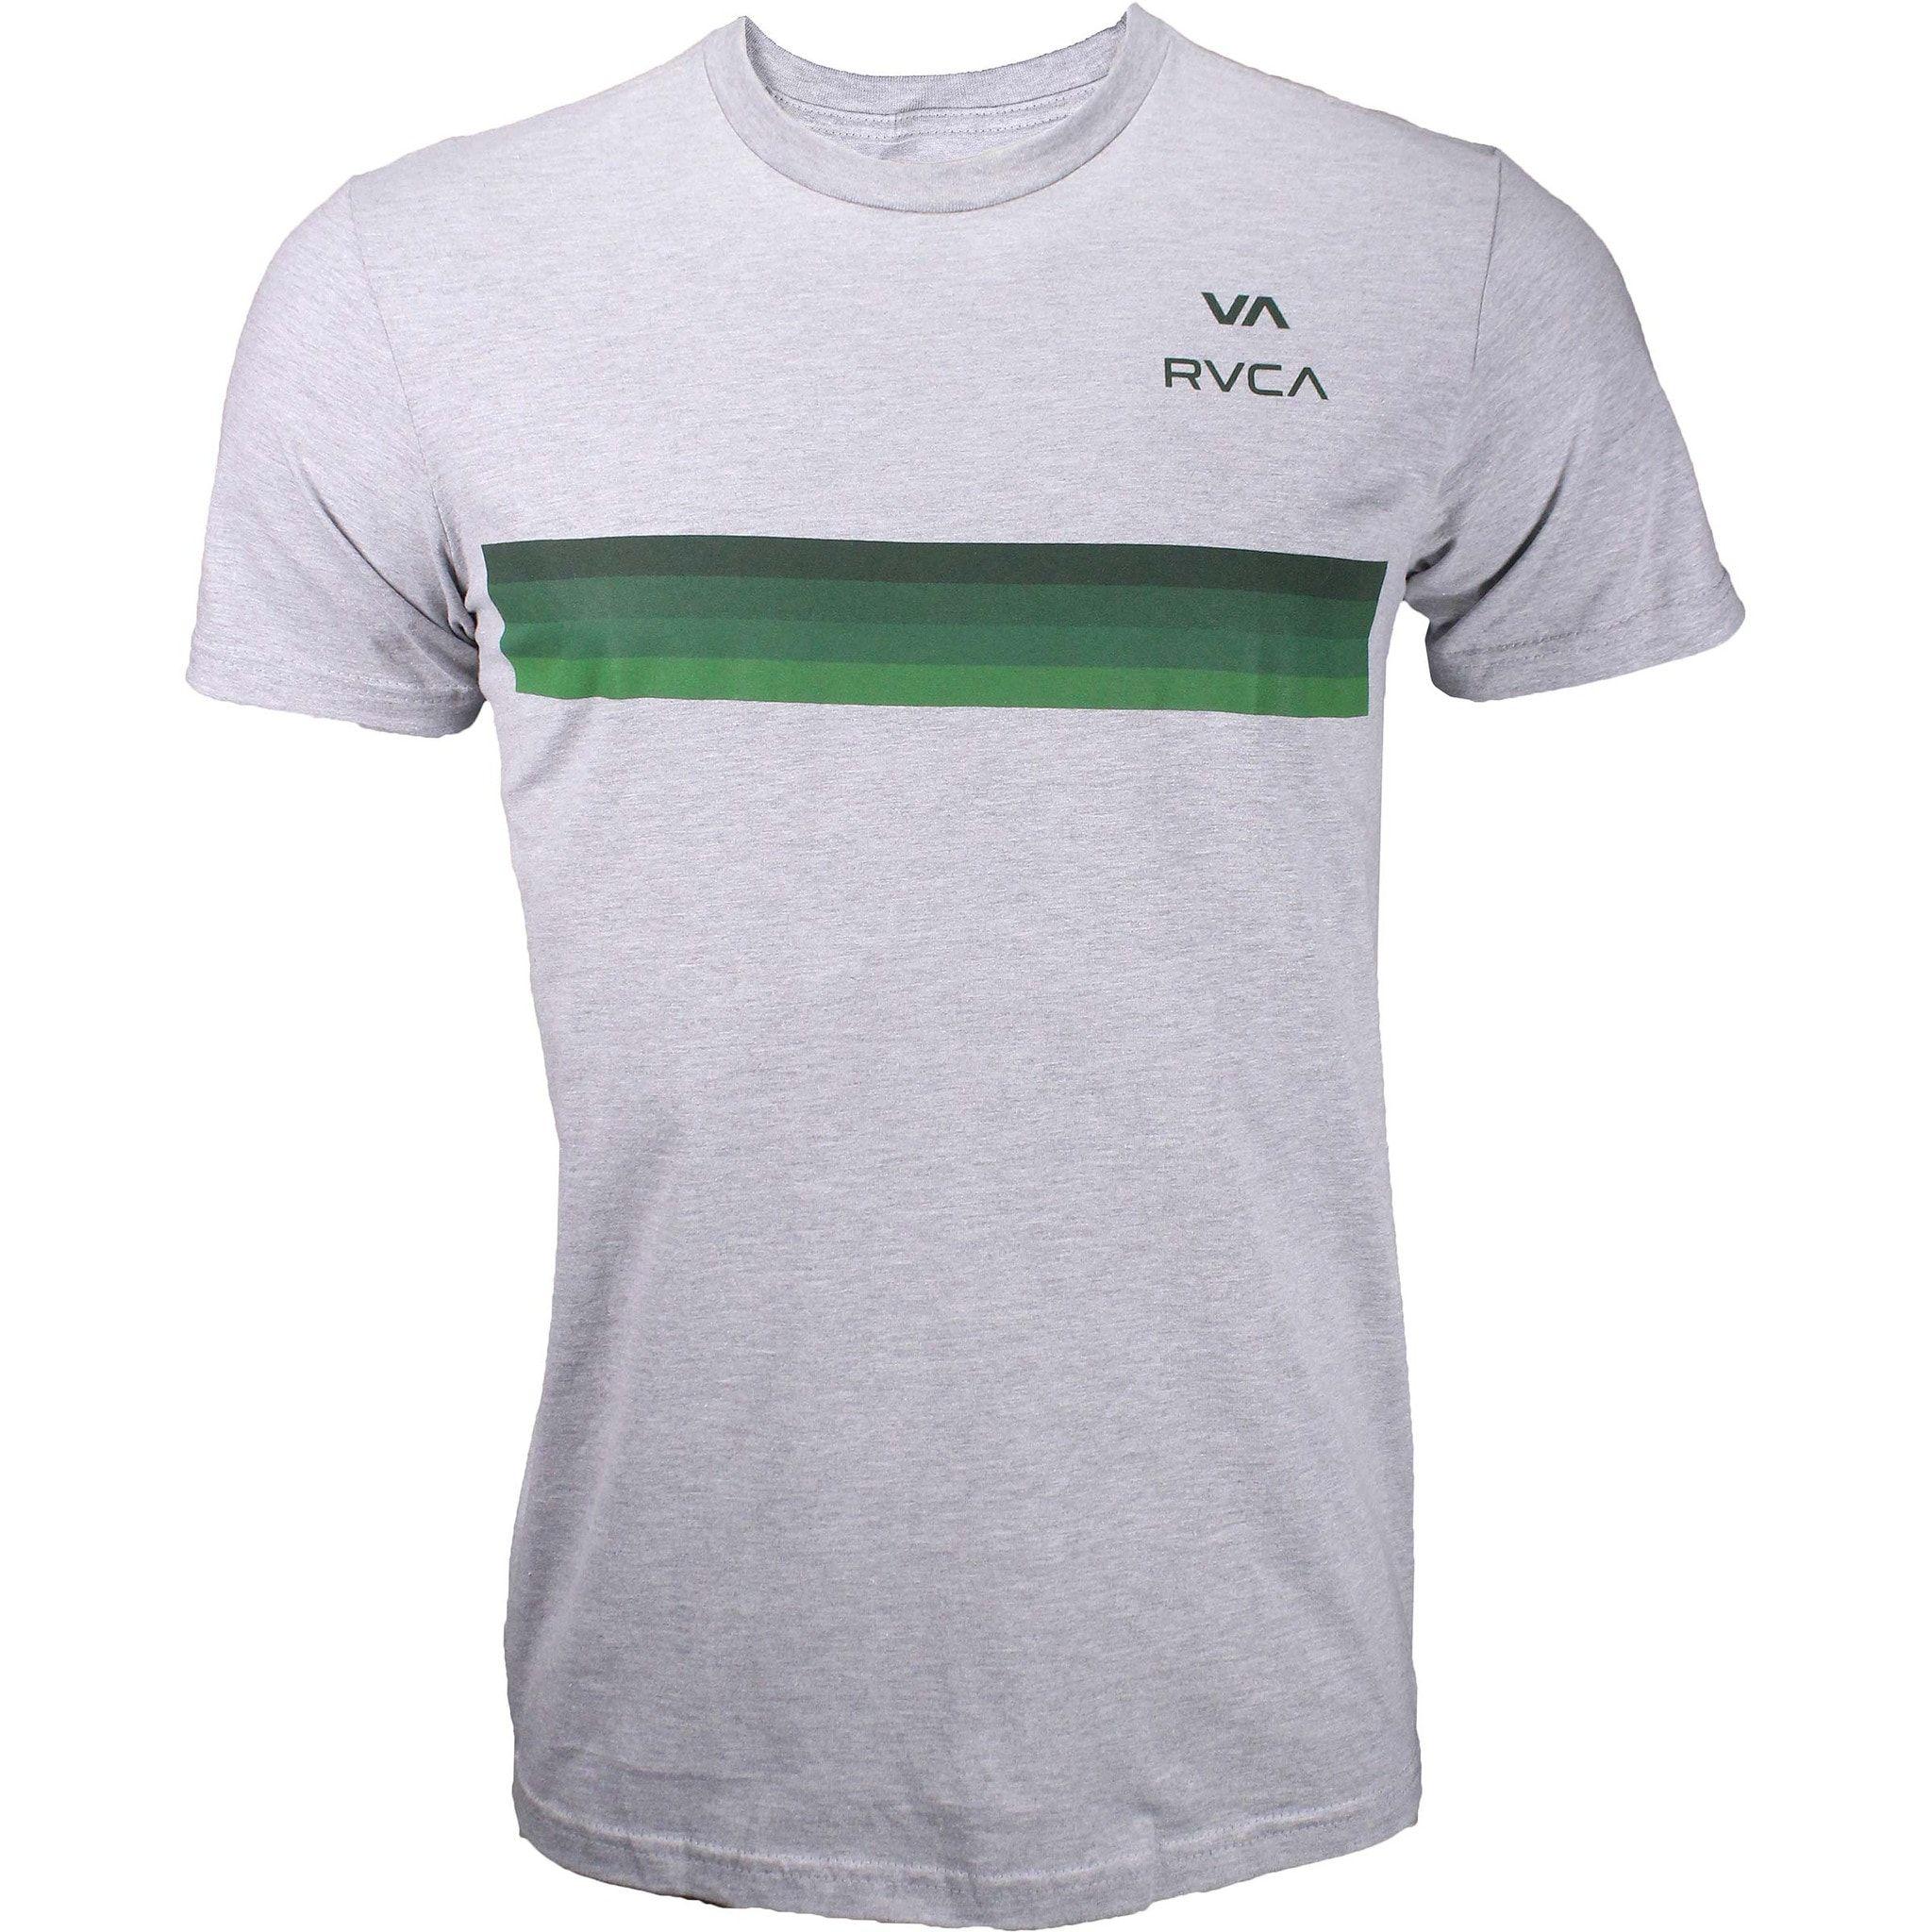 RVCA VA Logo - Listed Price: $25.99 Brand: RVCA RVCA VA Horizon Shirt Short sleeve ...